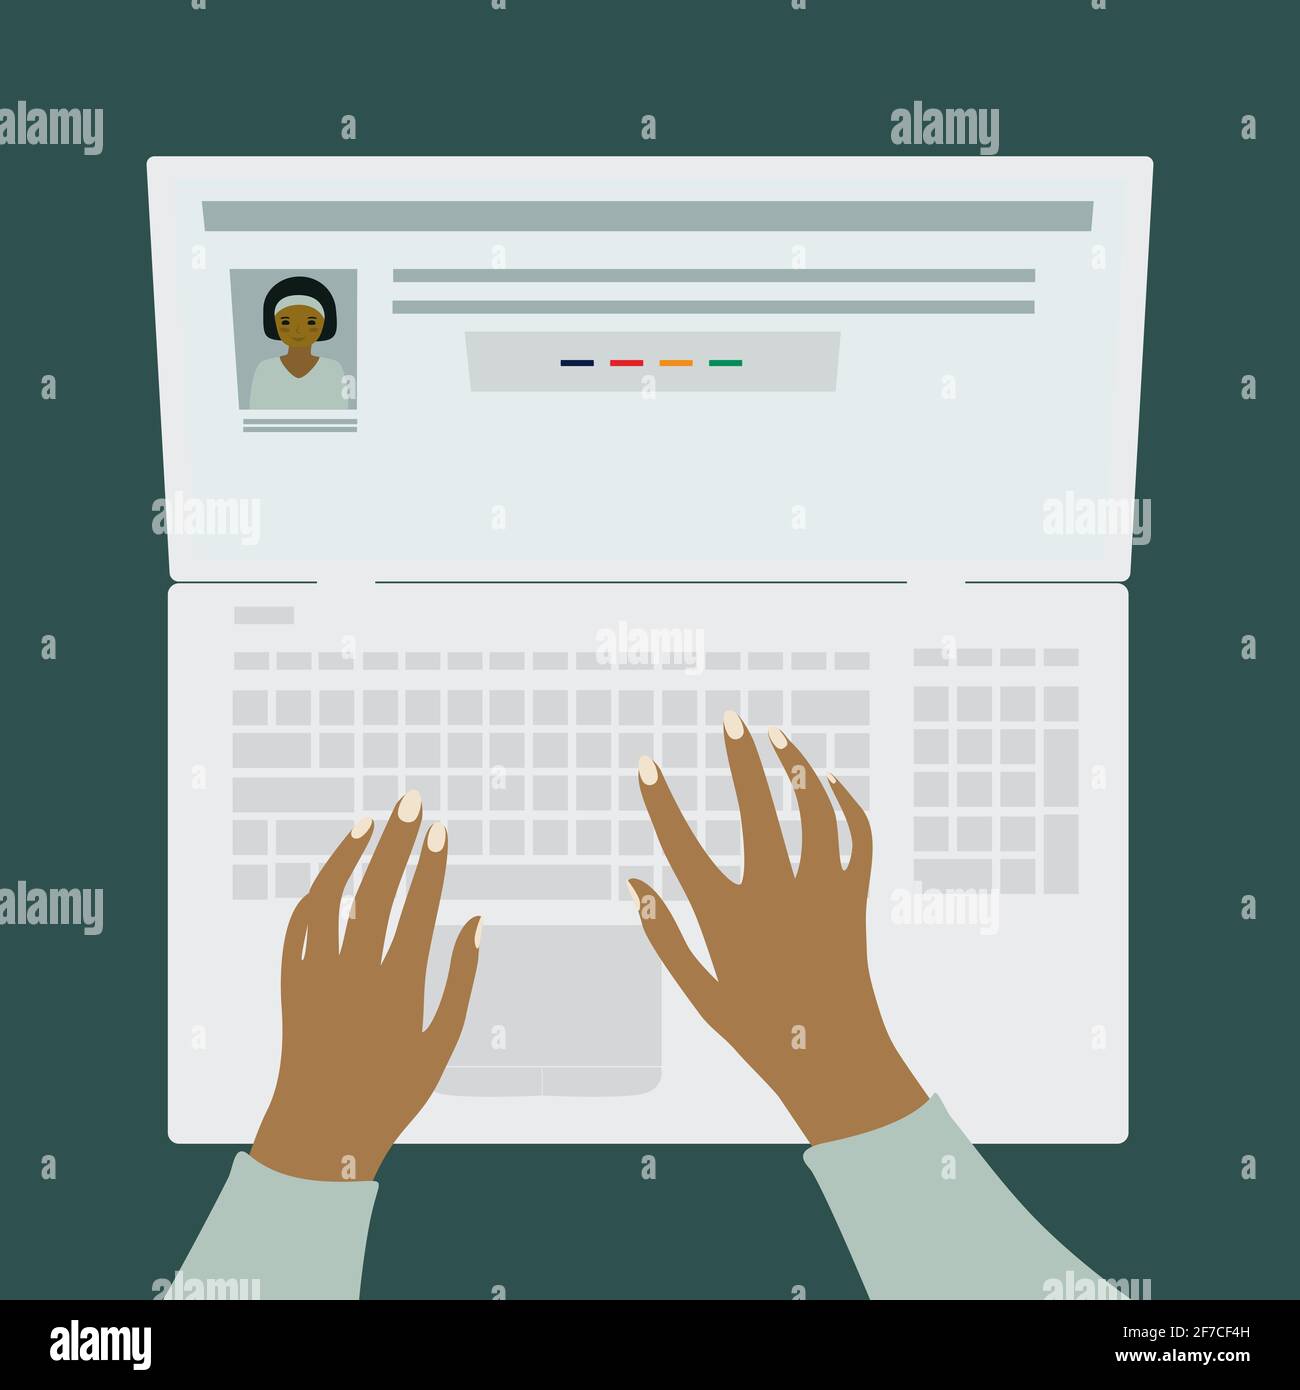 Human si sta registrando sul sito Web. Uomo e donna in cerca di lavoro freelance. Mani umane sulla tastiera di un computer portatile. Vista dall'alto. Illustratore vettore isolato Illustrazione Vettoriale